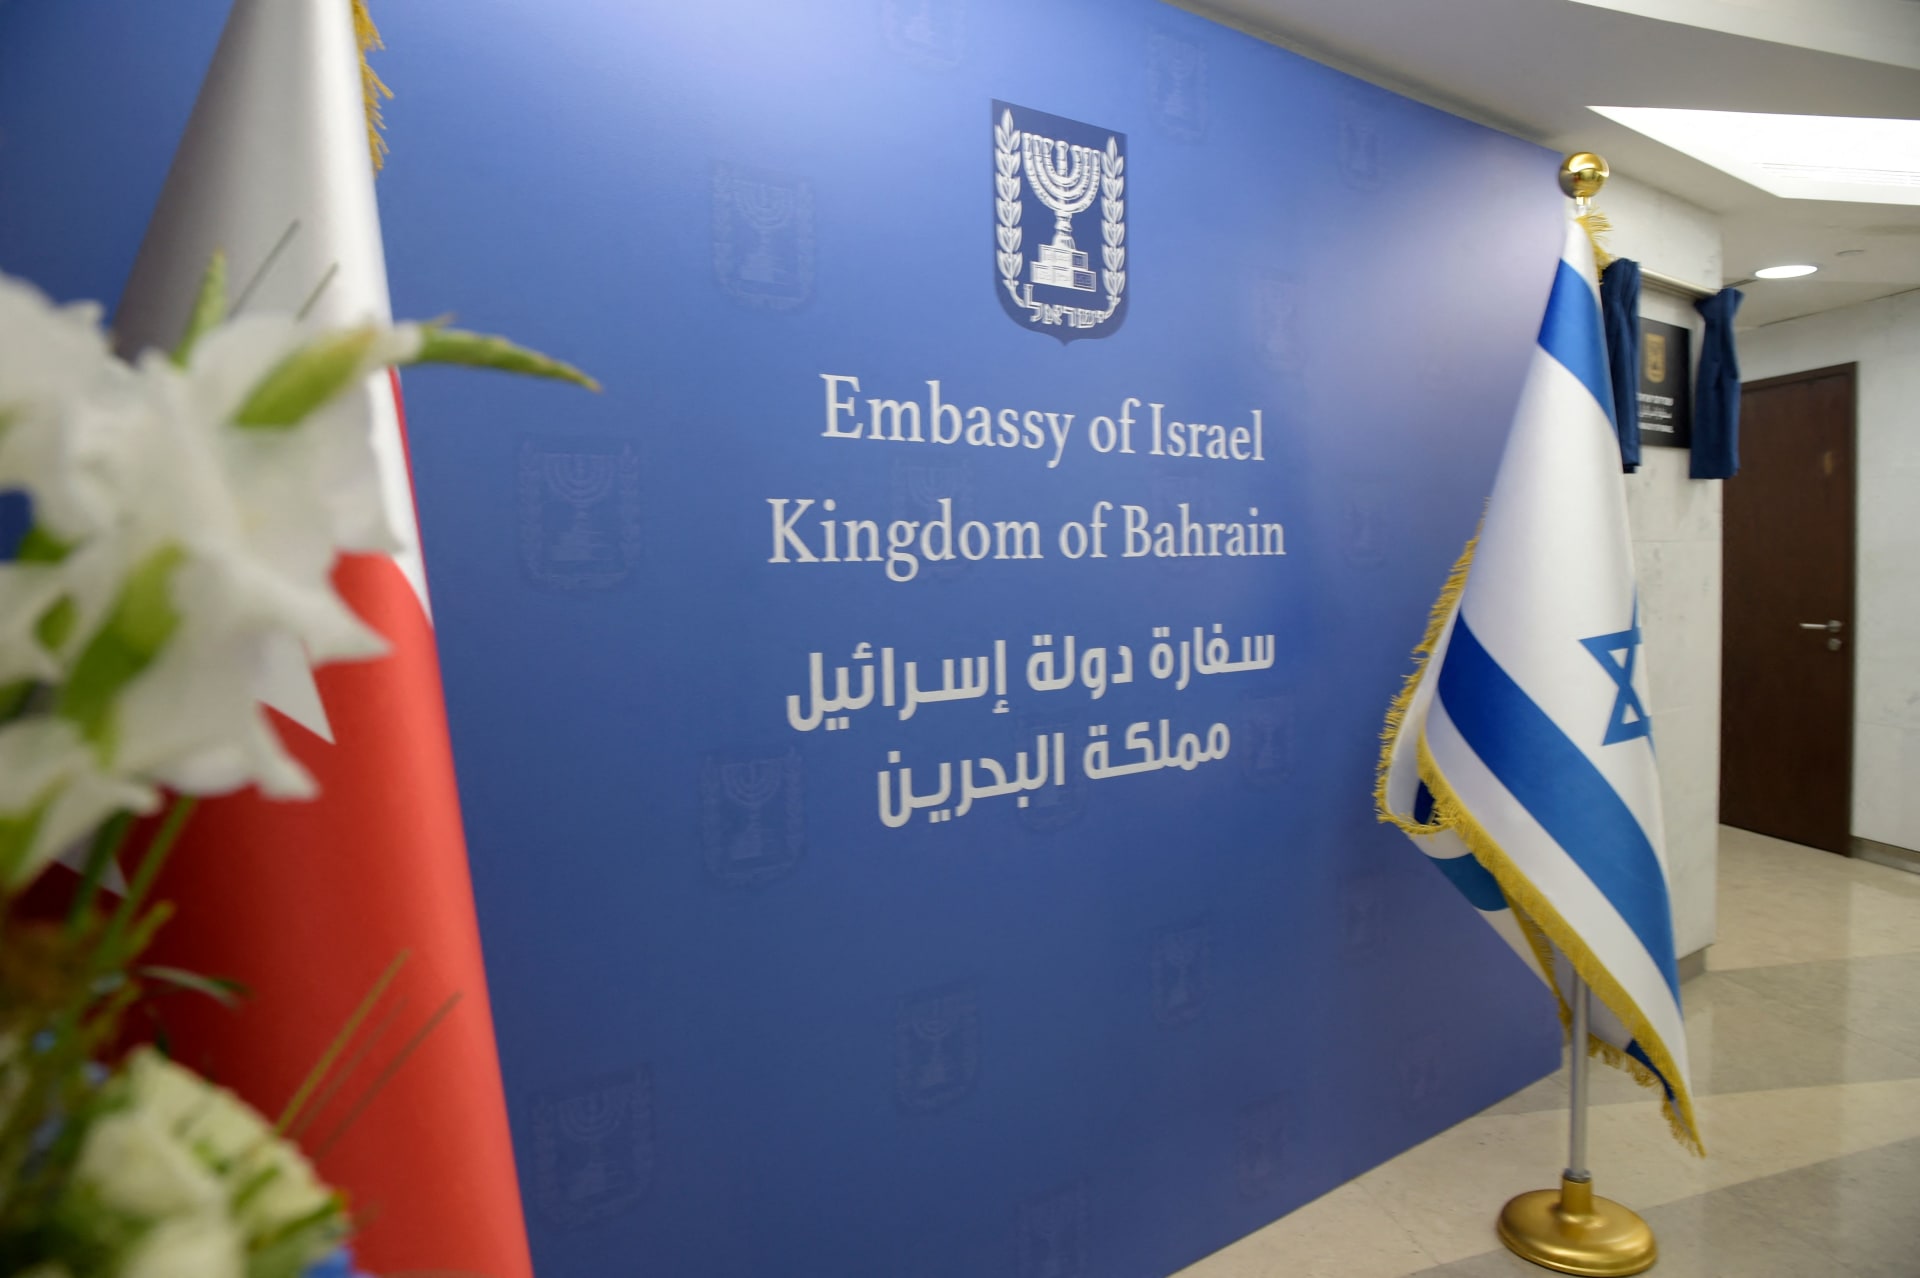 البرلمان البحريني يُعلن وقف العلاقات الاقتصادية مع إسرائيل ومغادرة سفيرها المنامة